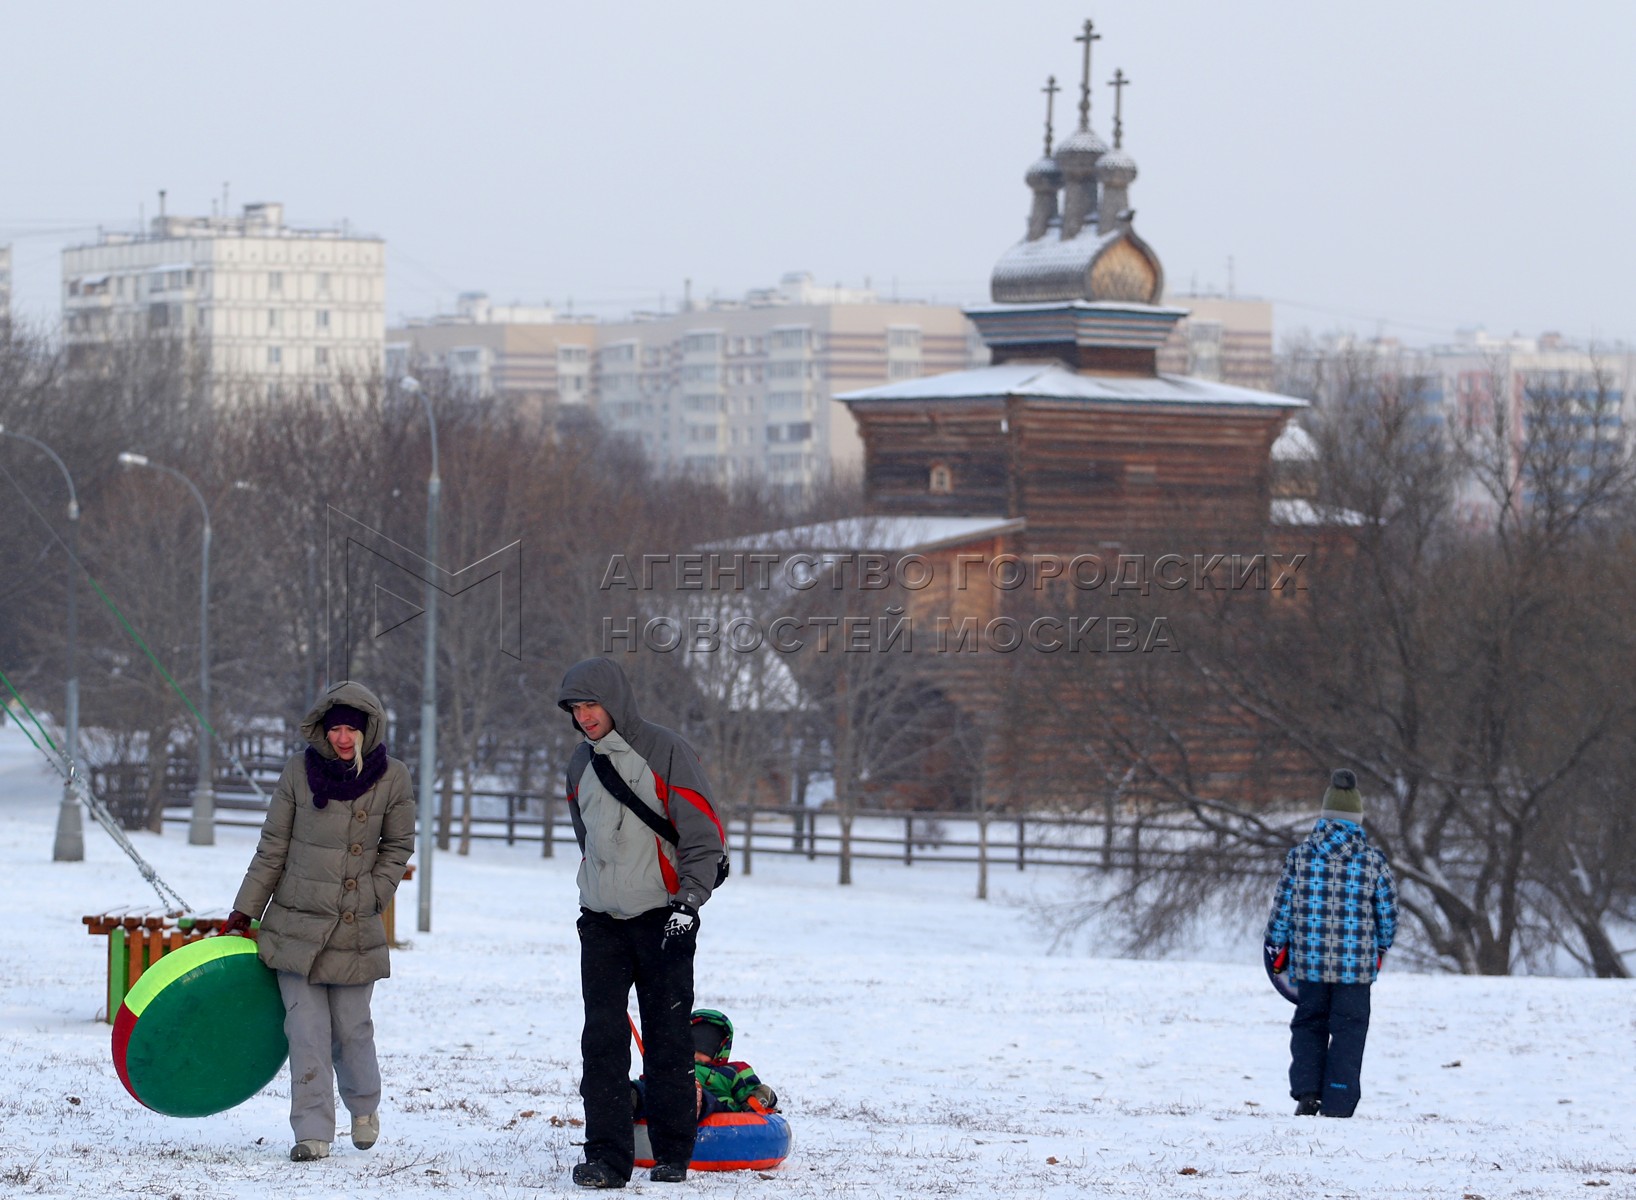 Праздники в москве в феврале. Москва февраль днем. Итишники в феврале. Москва февраль фото туристов. Важные новости в феврале.